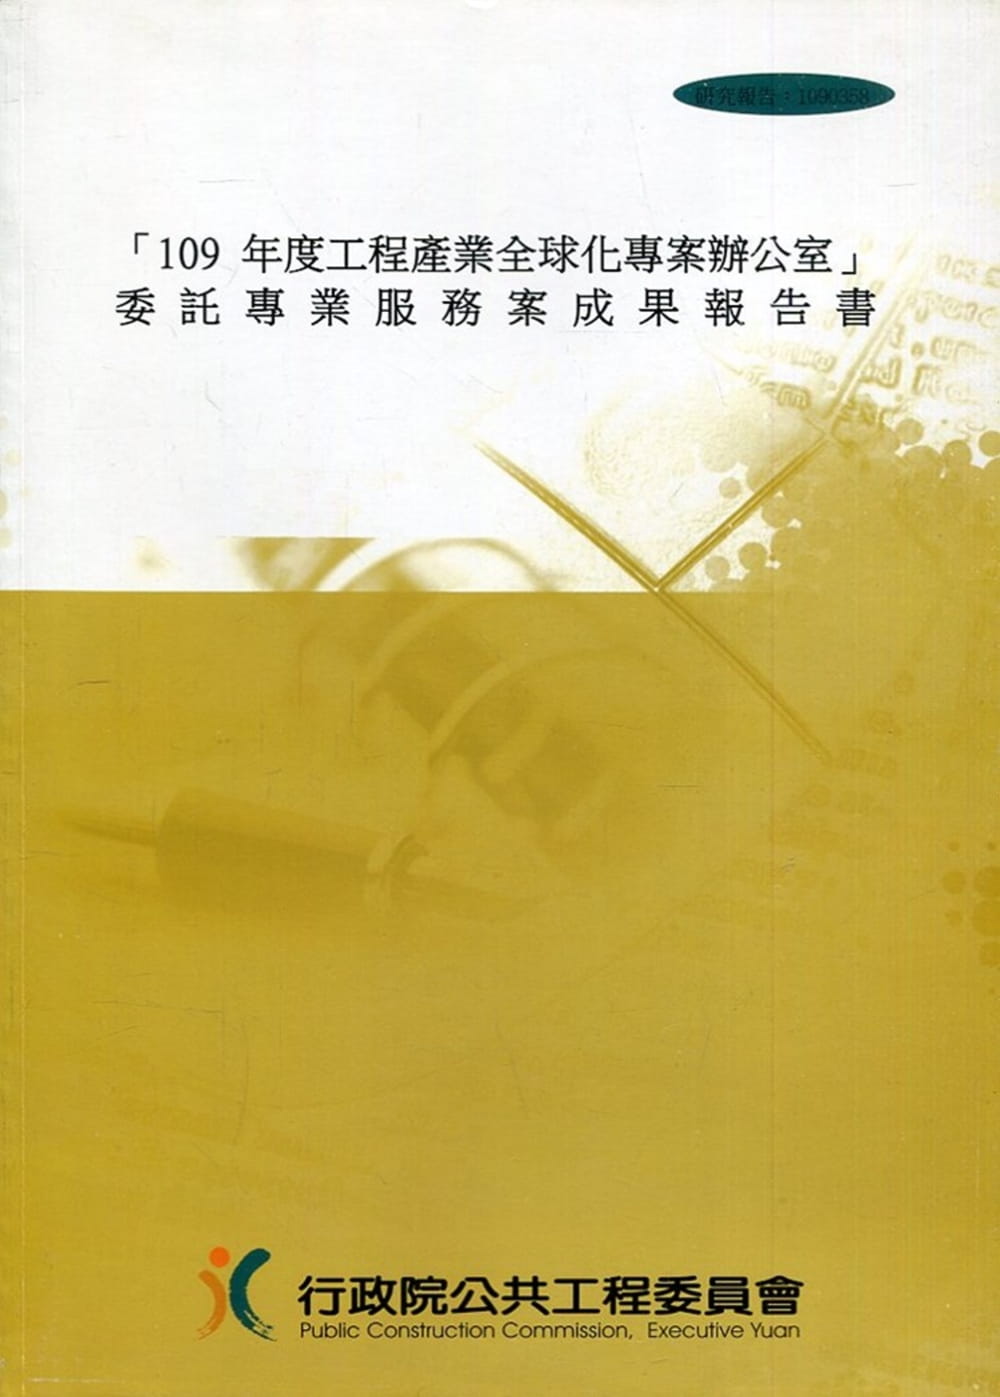 「109年度工程產業全球化專案辦公室」委託專業服務案成果報告書(附光碟)